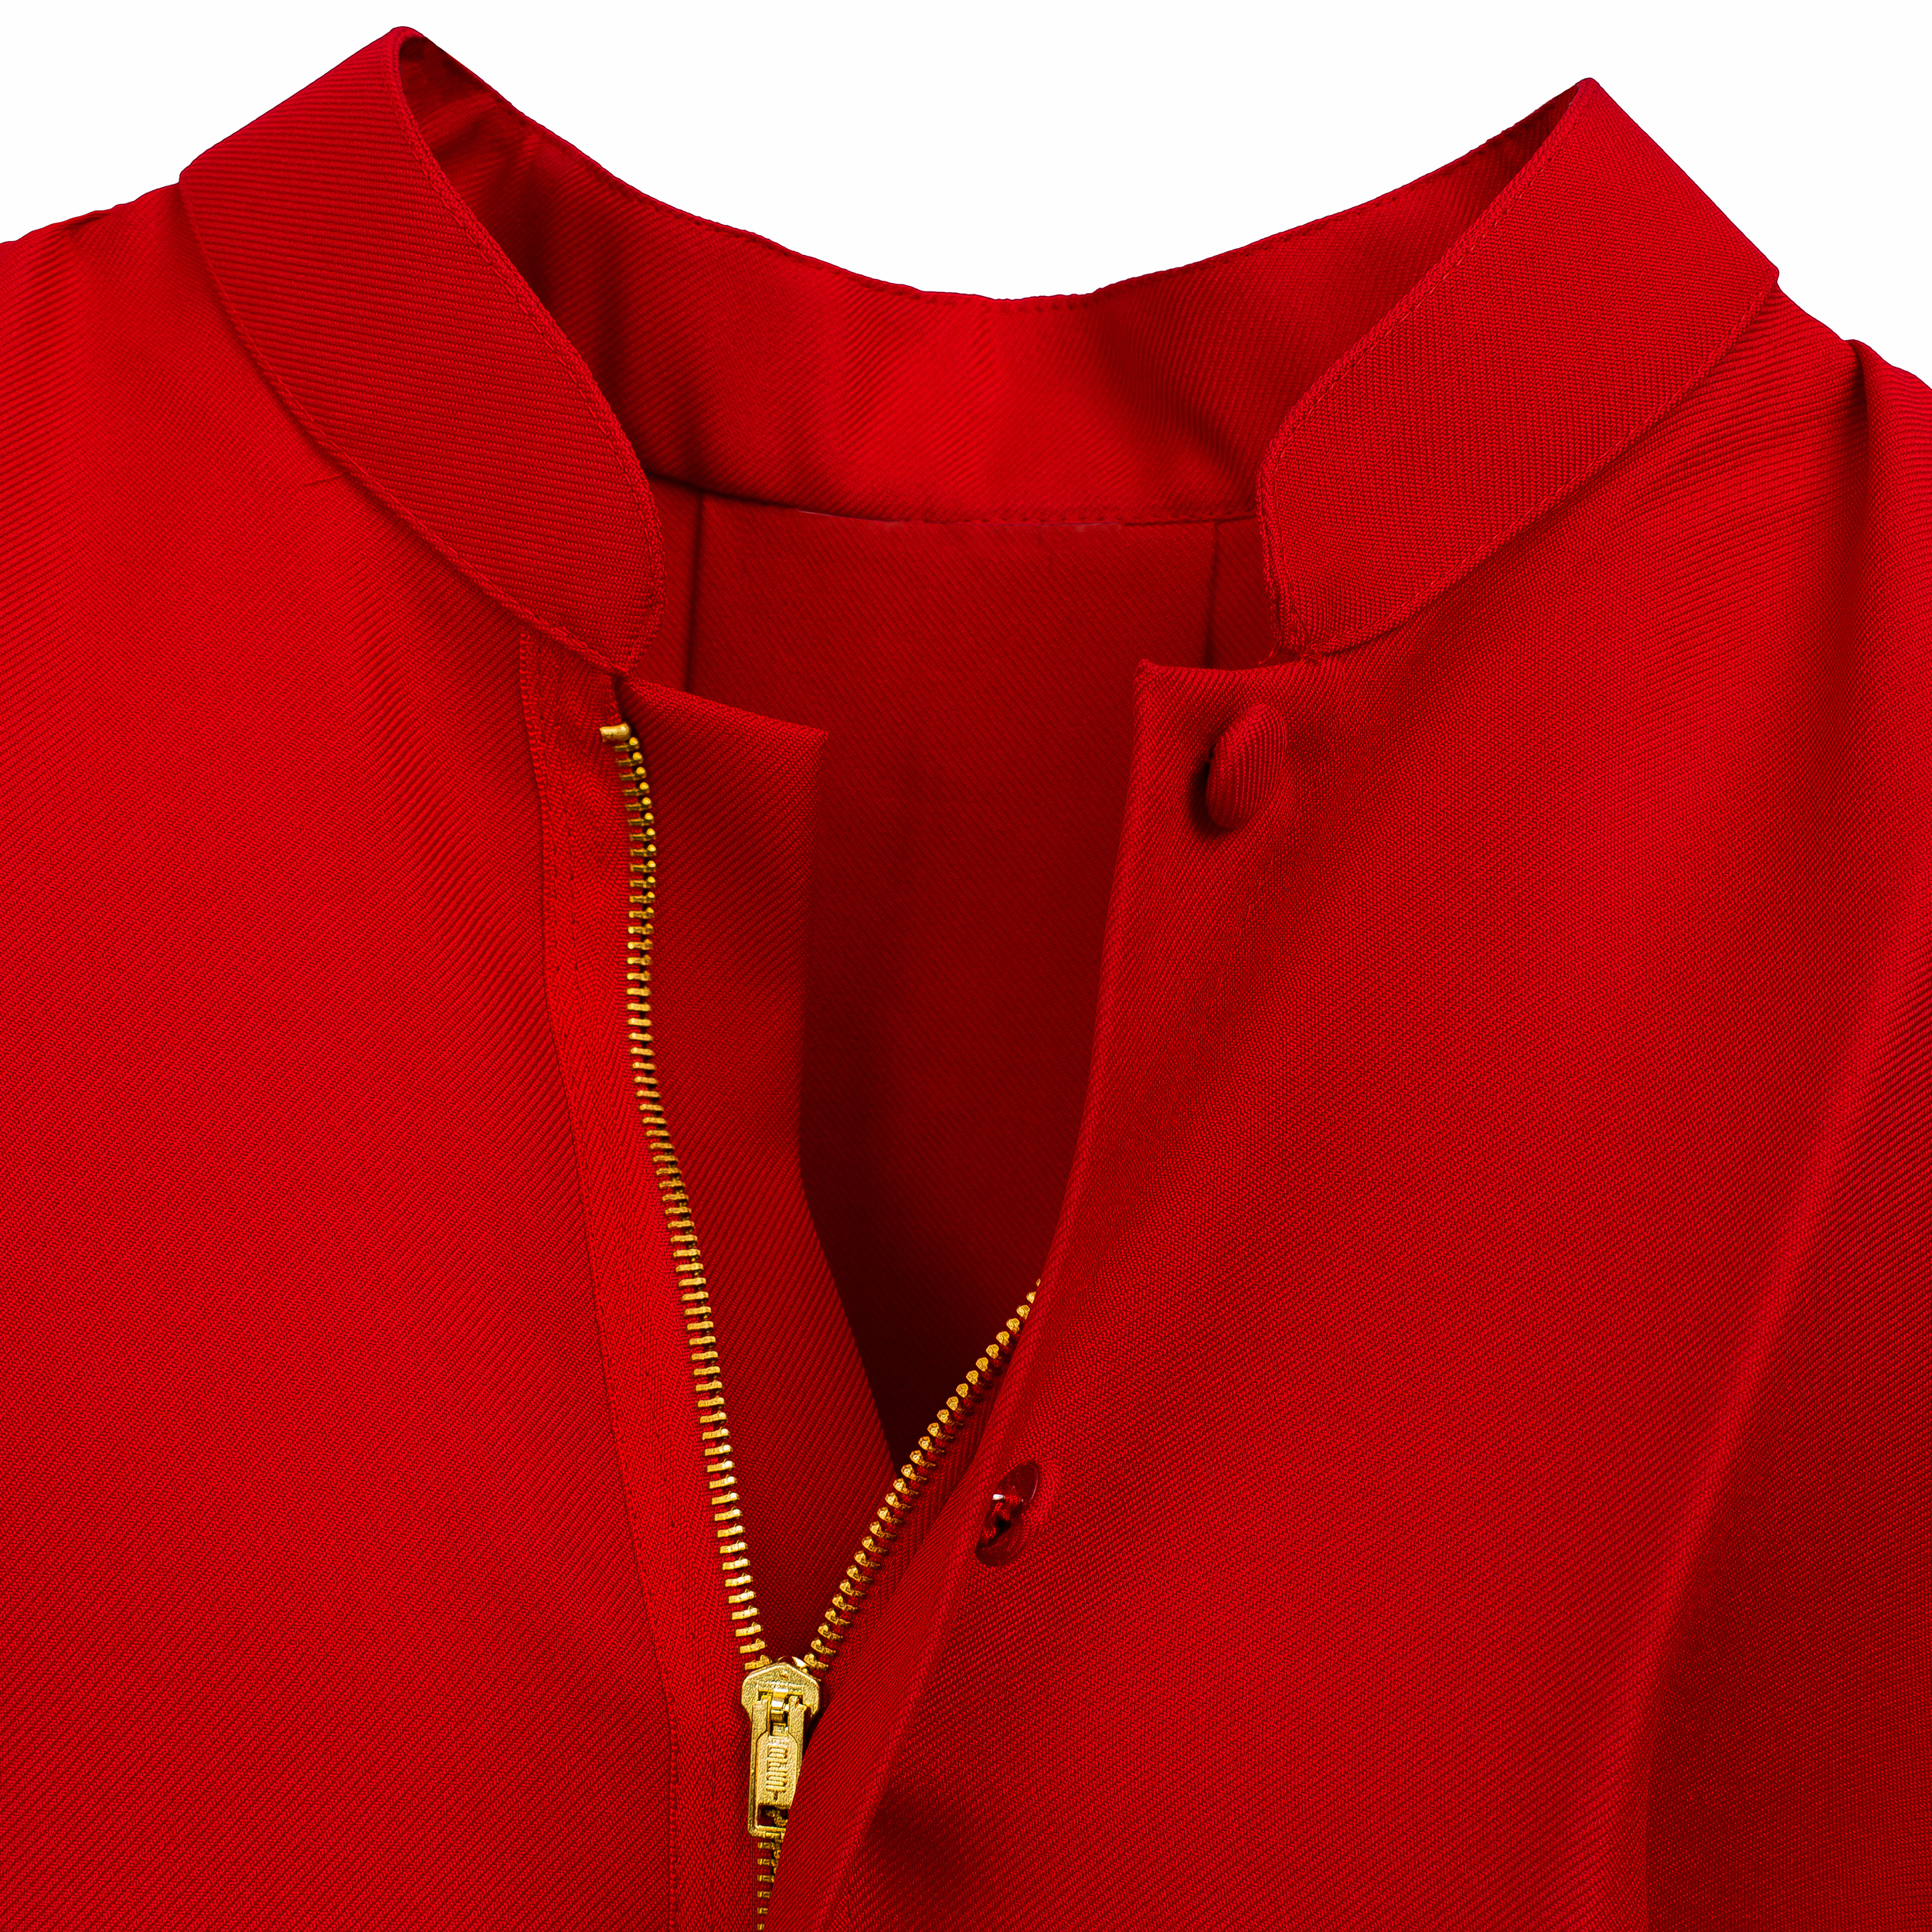 434 Traje acólito/ monaguillo en color rojo roquete color blanco, cuello cuadrado encaje en mangas y baja; poliéster y algodón – San Rafael Arcángel